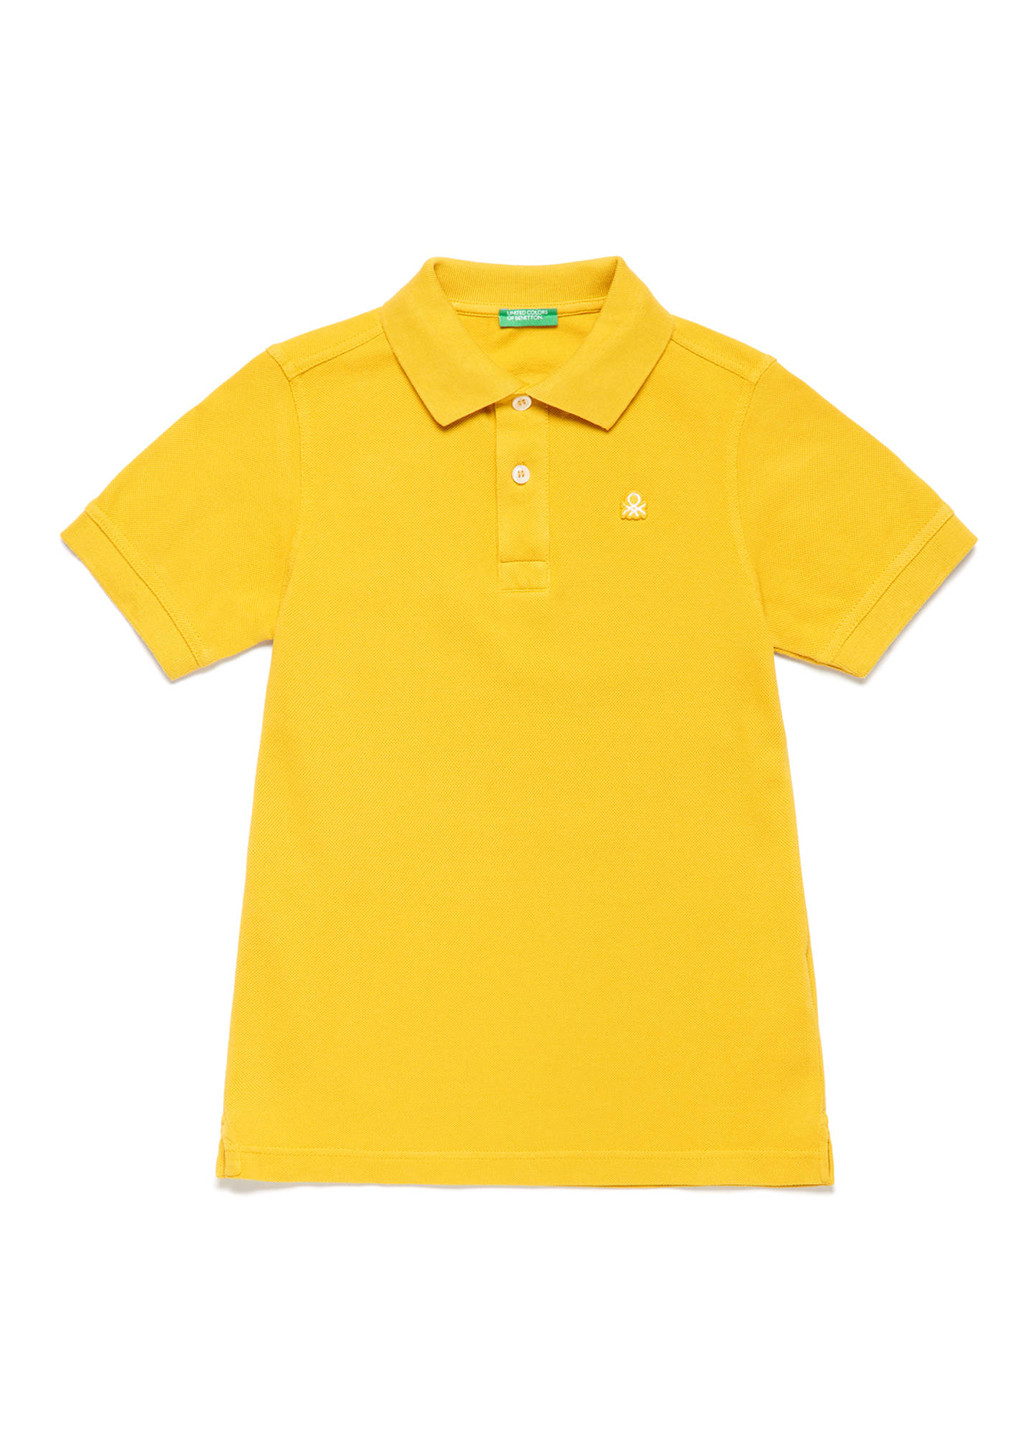 Светло-желтая детская футболка-поло для мальчика United Colors of Benetton однотонная